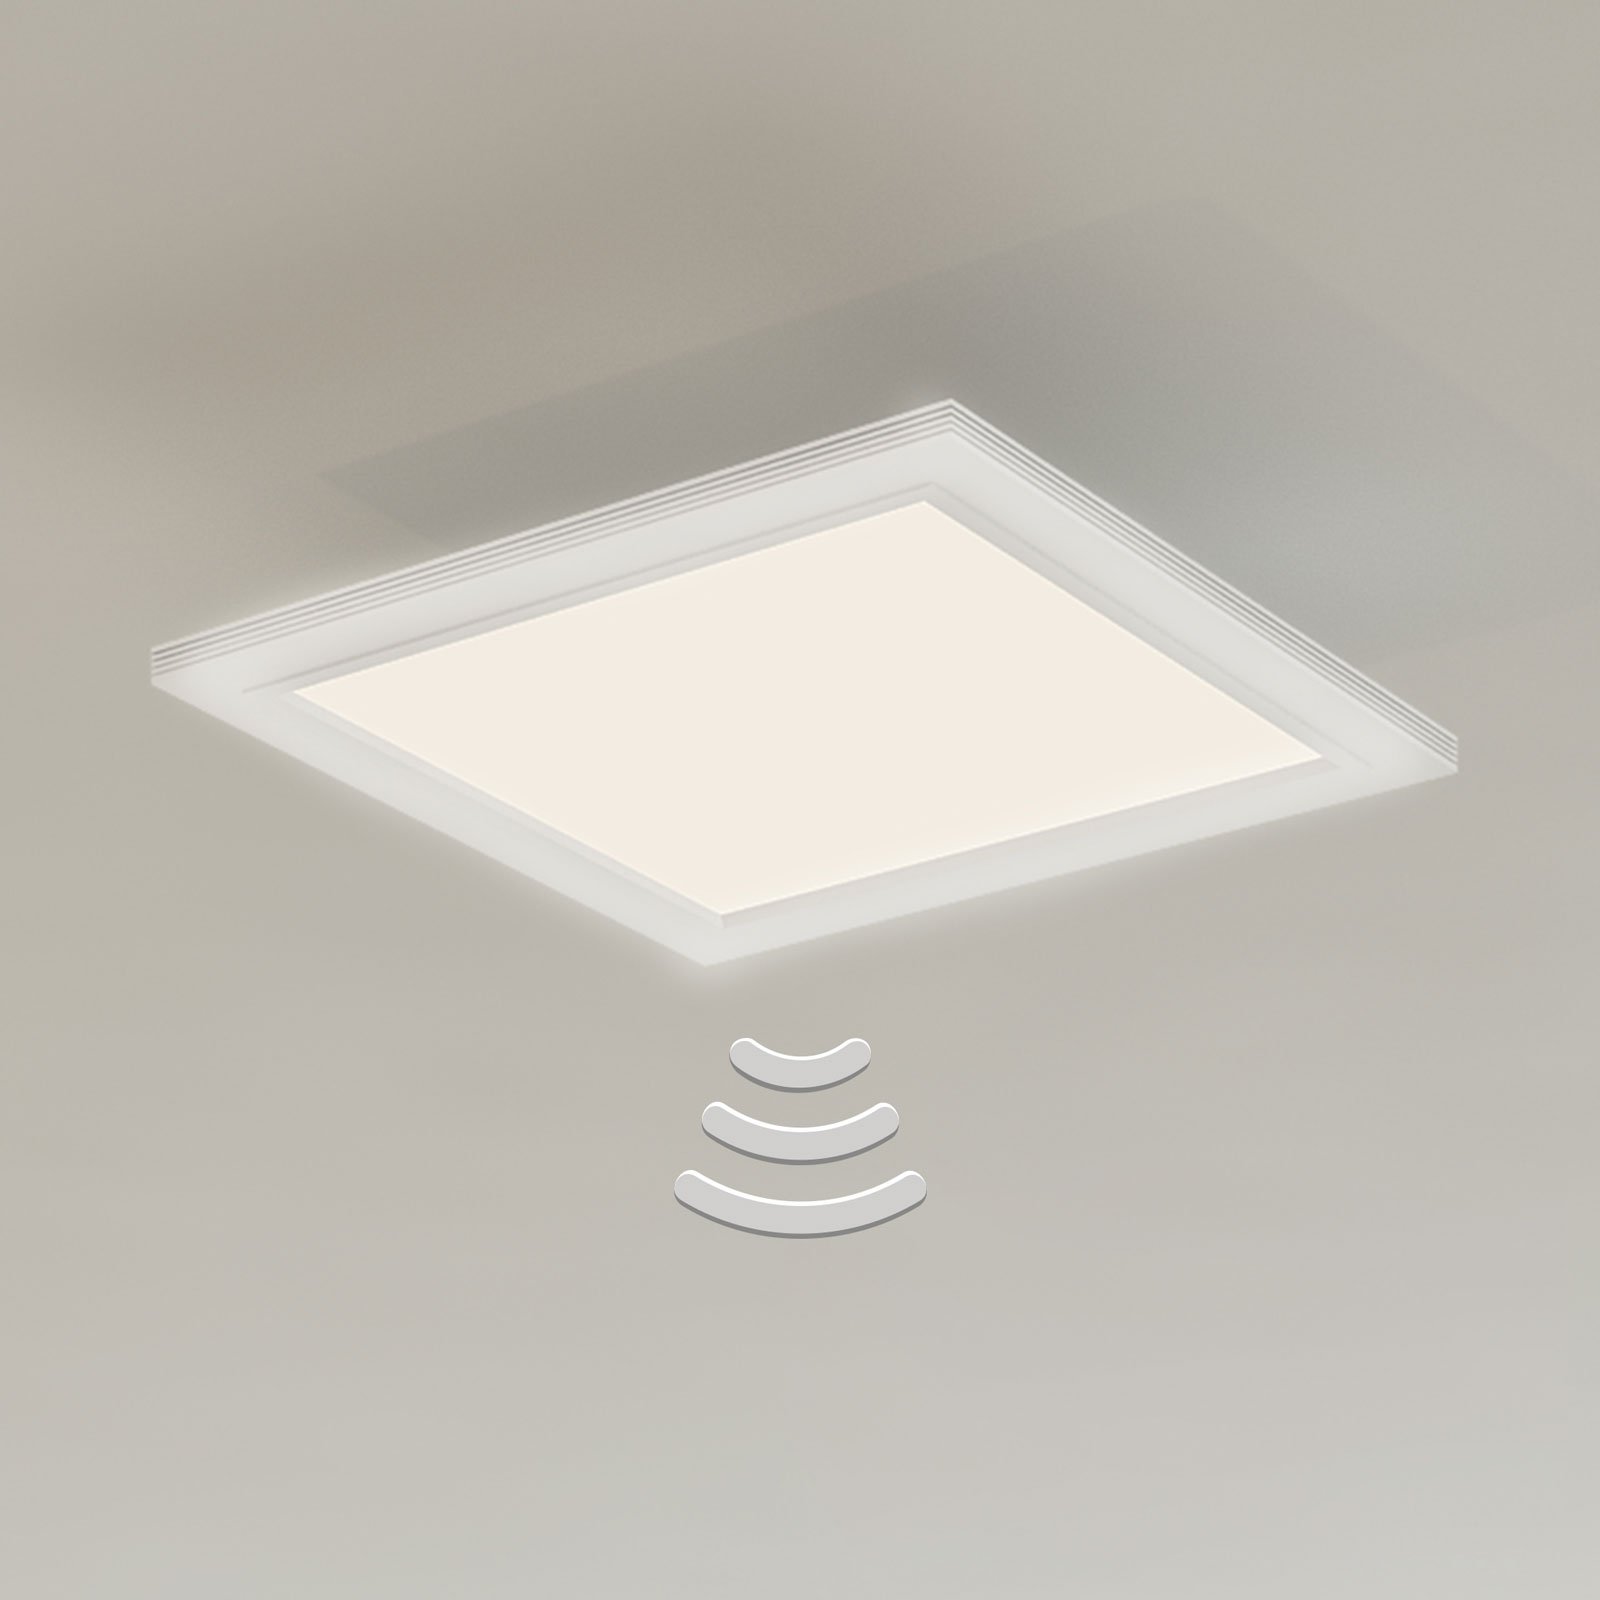 LED-taklampa Piatto, sensor, 29,5 x 29,5 cm